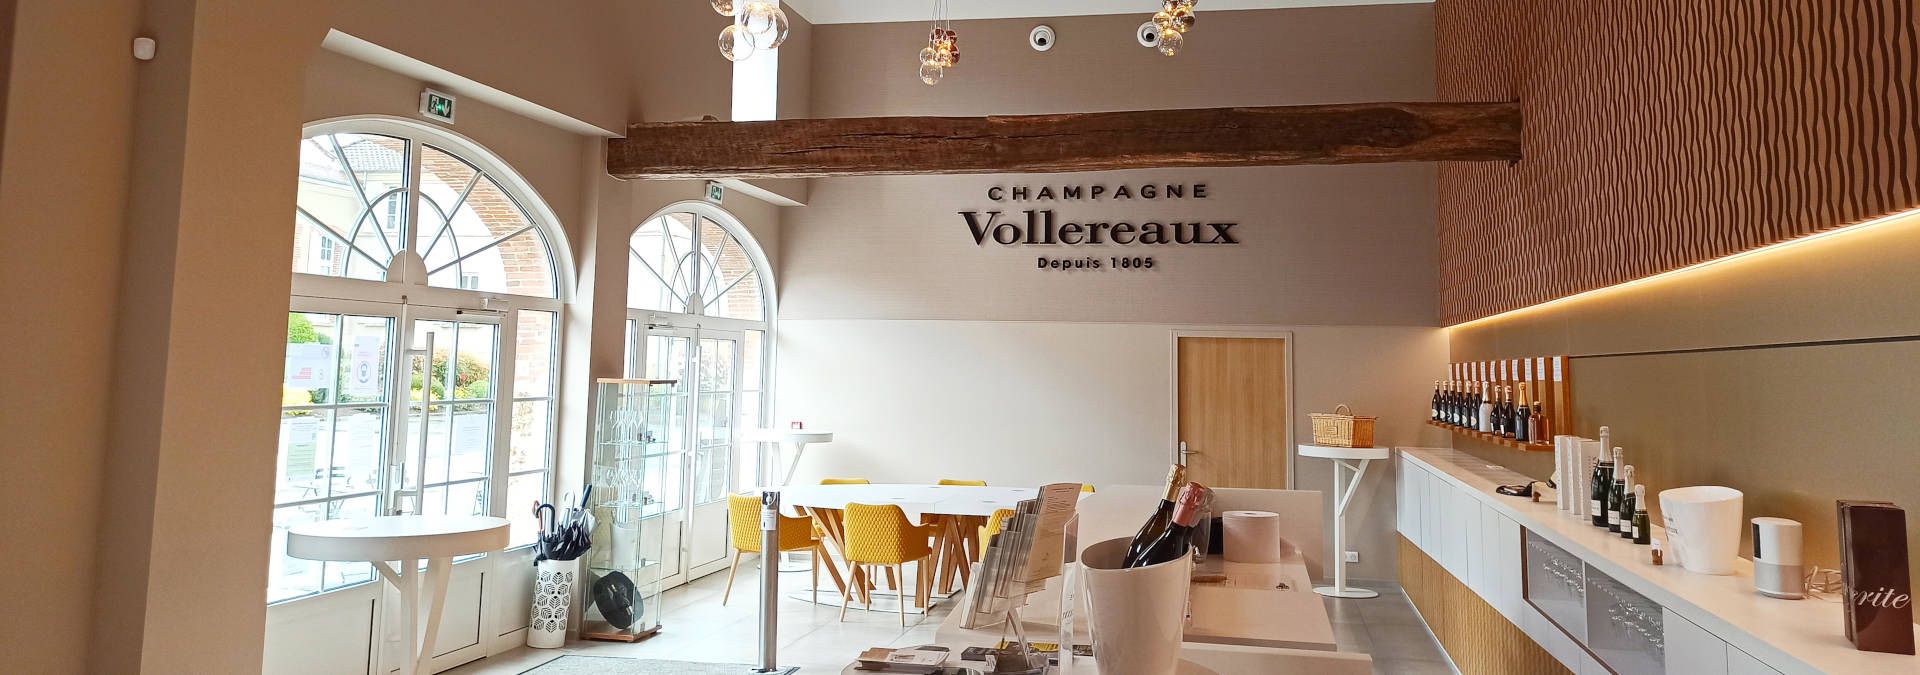 Champagne-Vollereaux - Rue des Vignerons